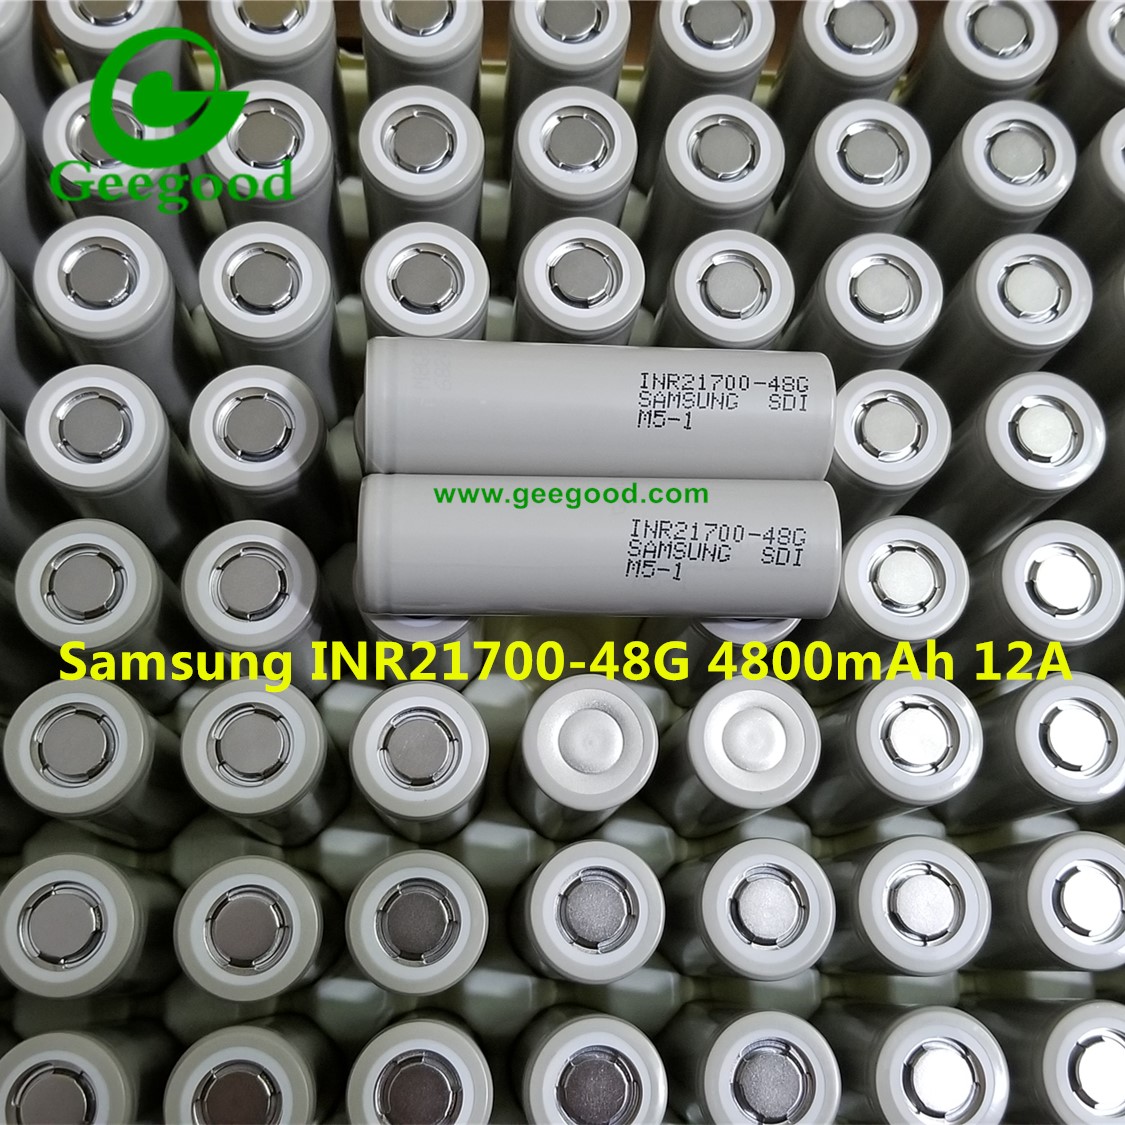 New Samsung 21700 battery INR21700-48G 4800mAh 12A